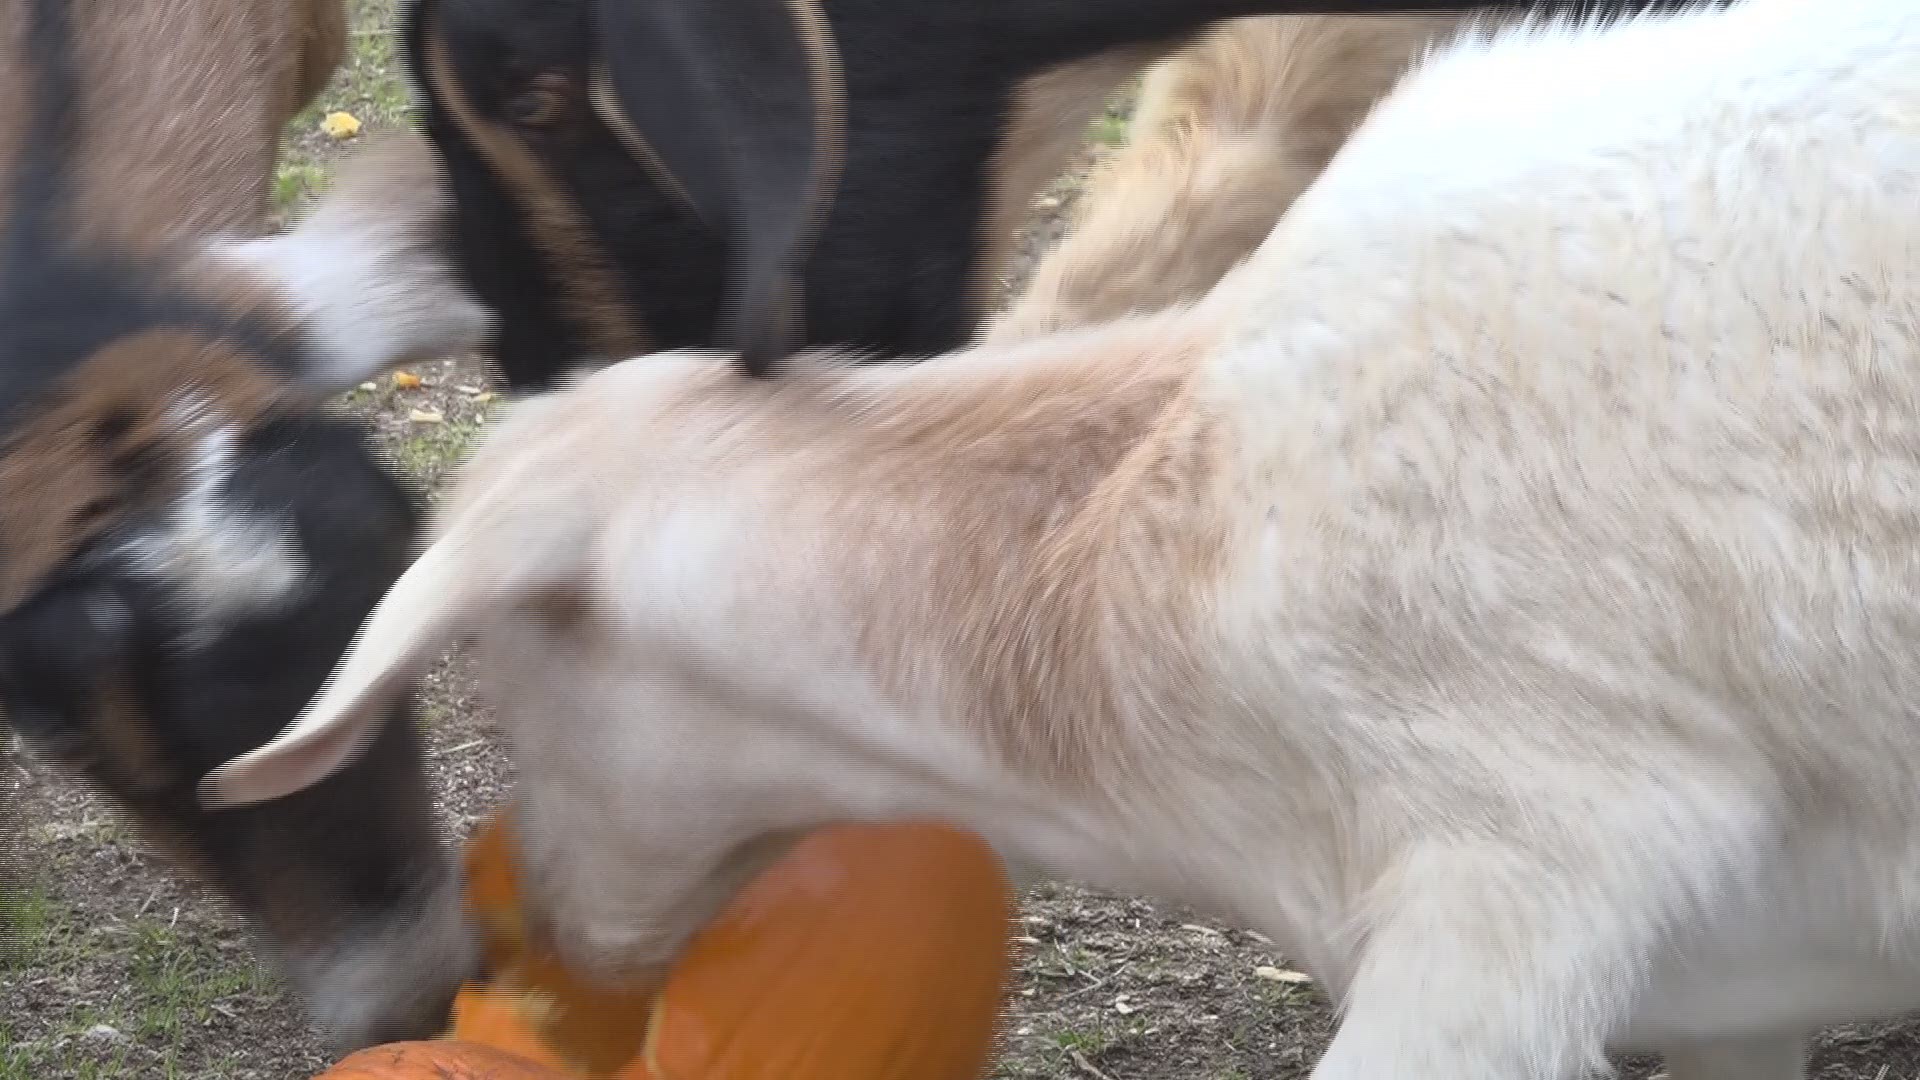 Animal sanctuary repurposes pumpkins for food